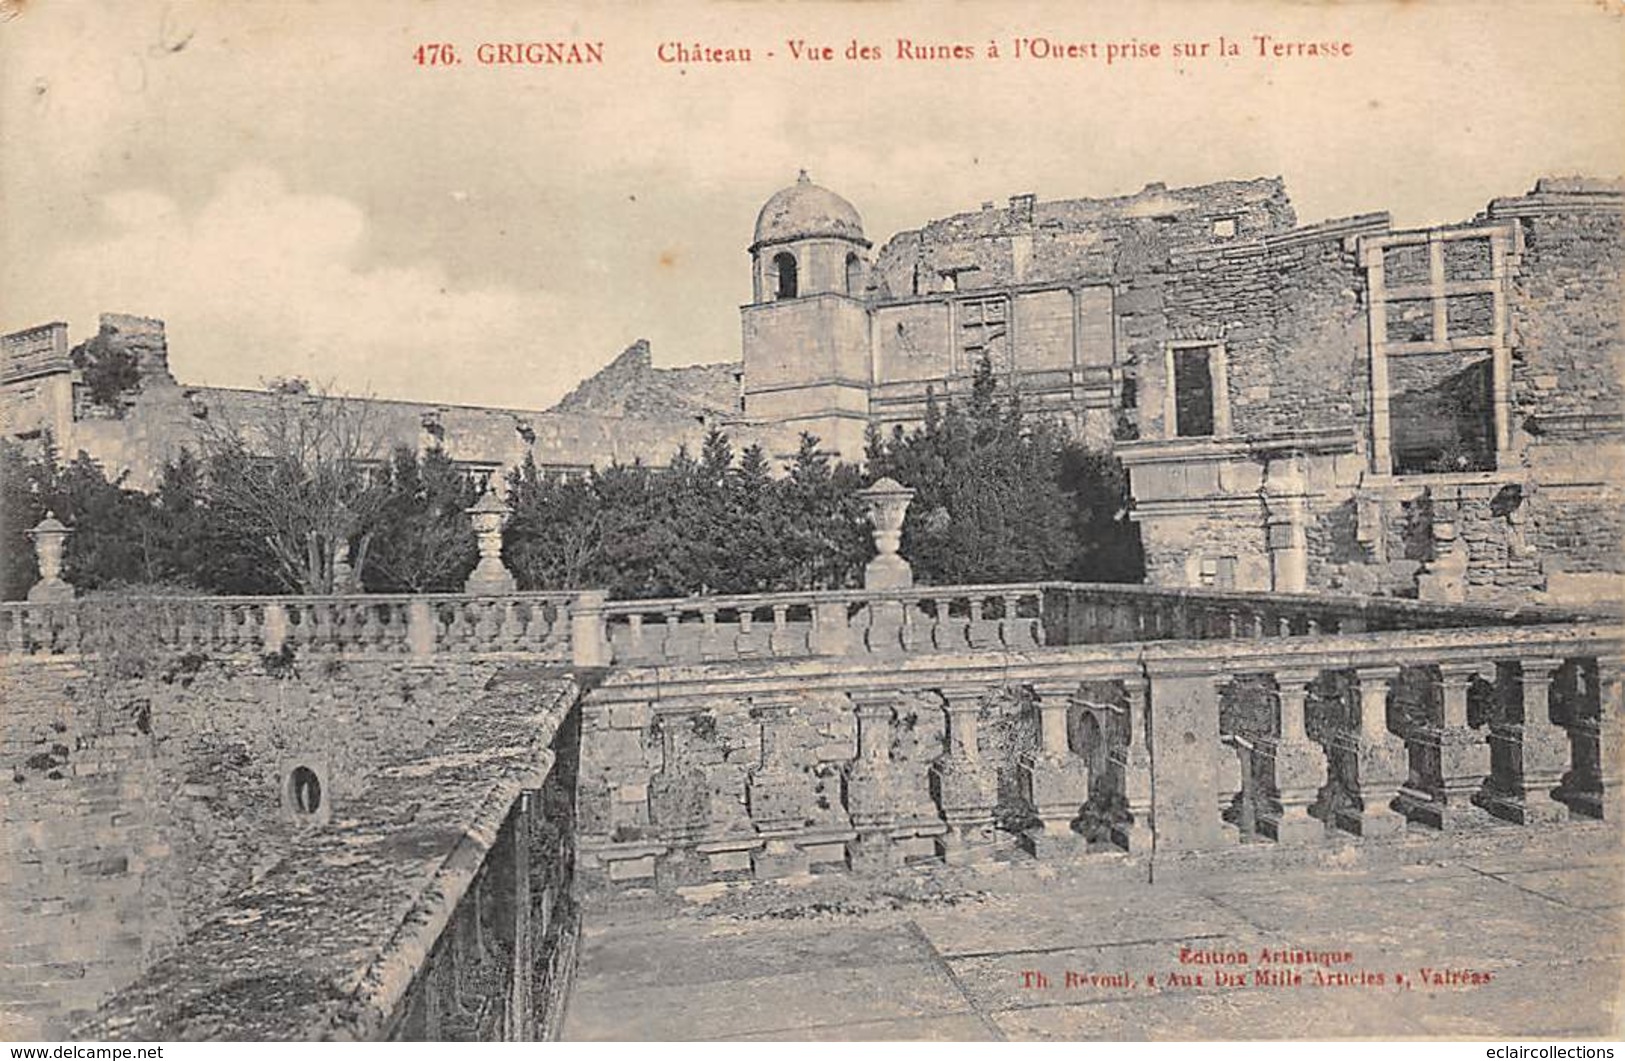 Grignan    26    Château et Edifices divers 16 cartes  (Voir scan)